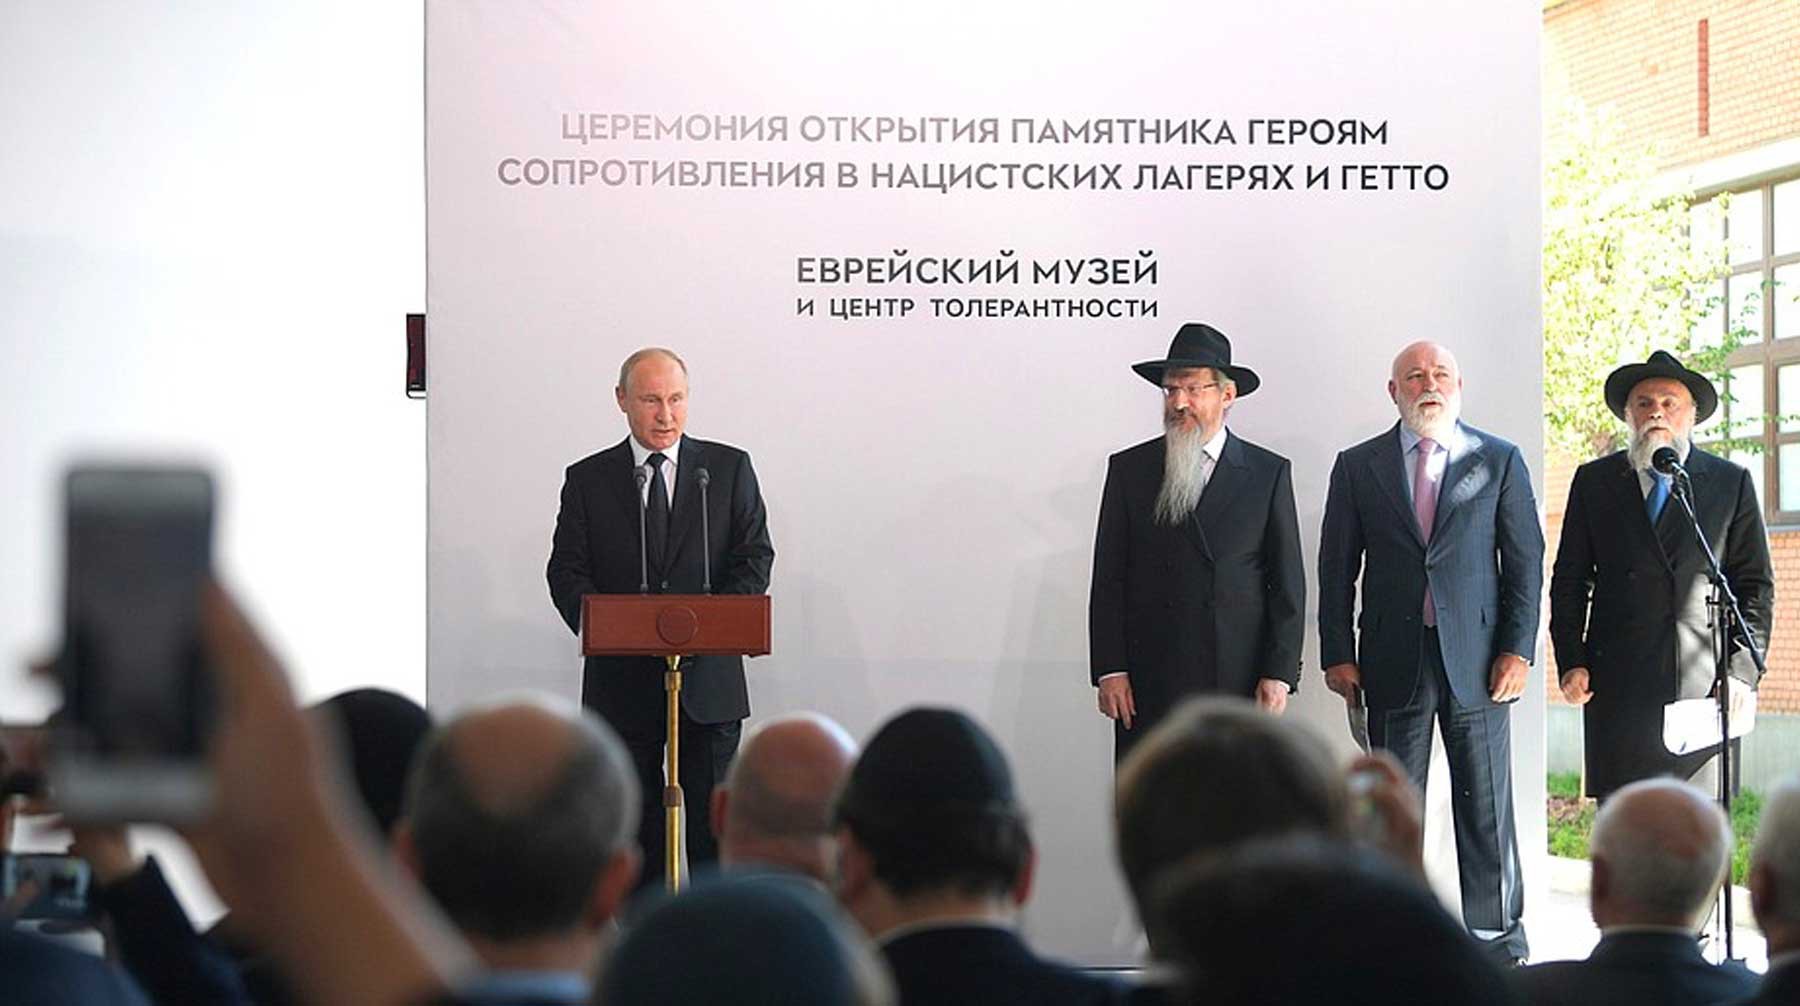 Dailystorm - Путин открыл памятник узникам концлагерей в Еврейском музее в Москве